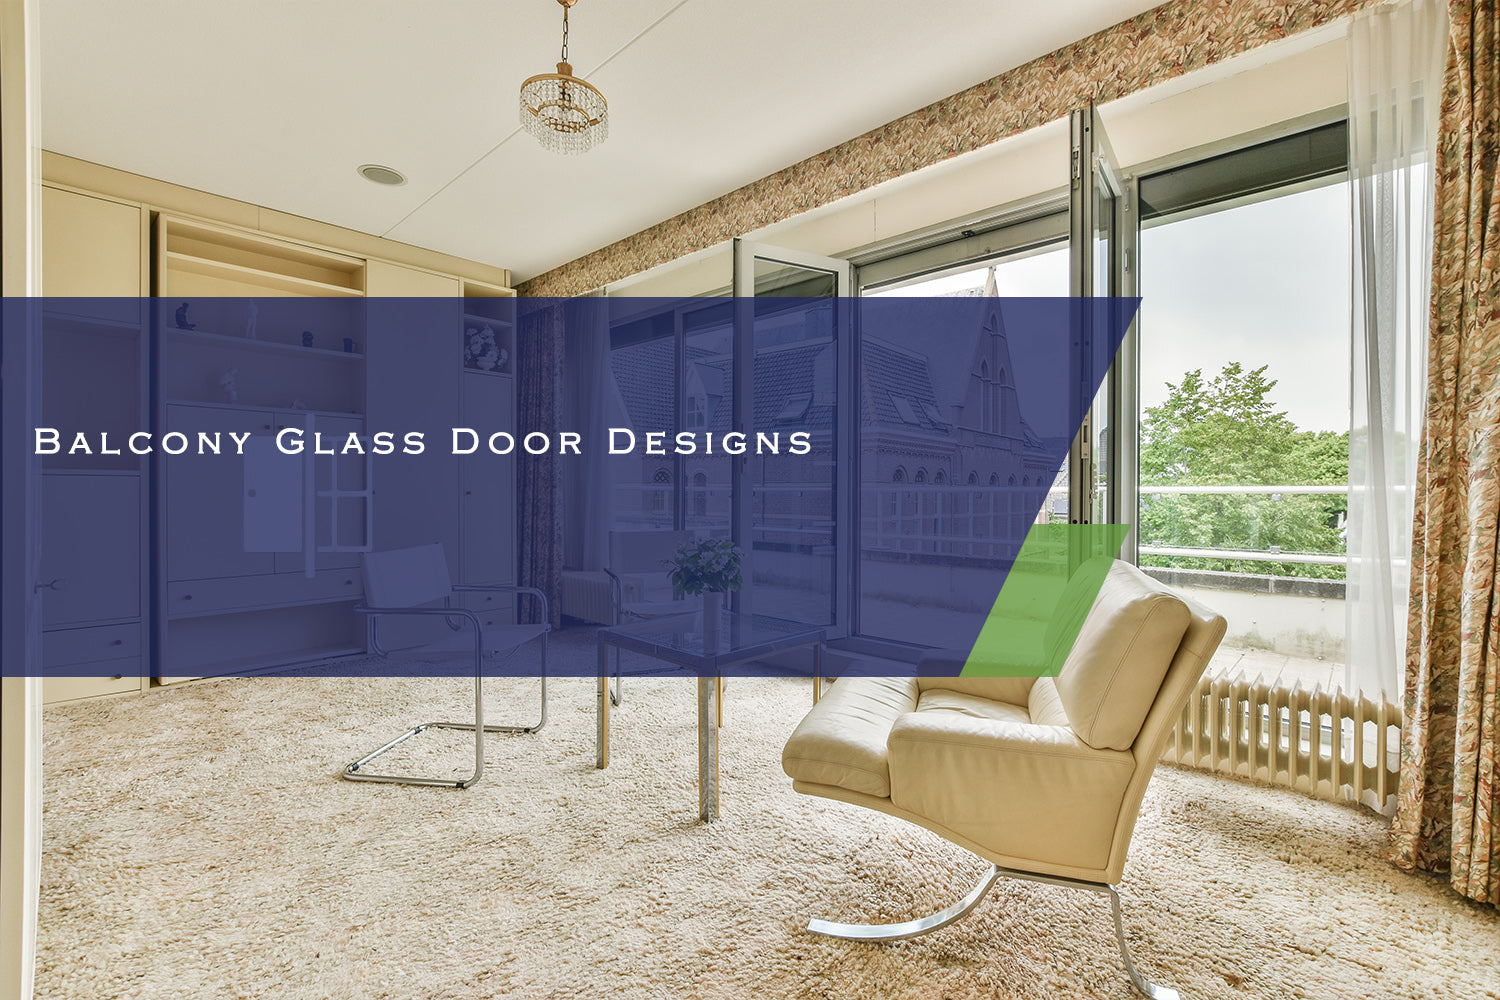 Balcony Glass Door Designs